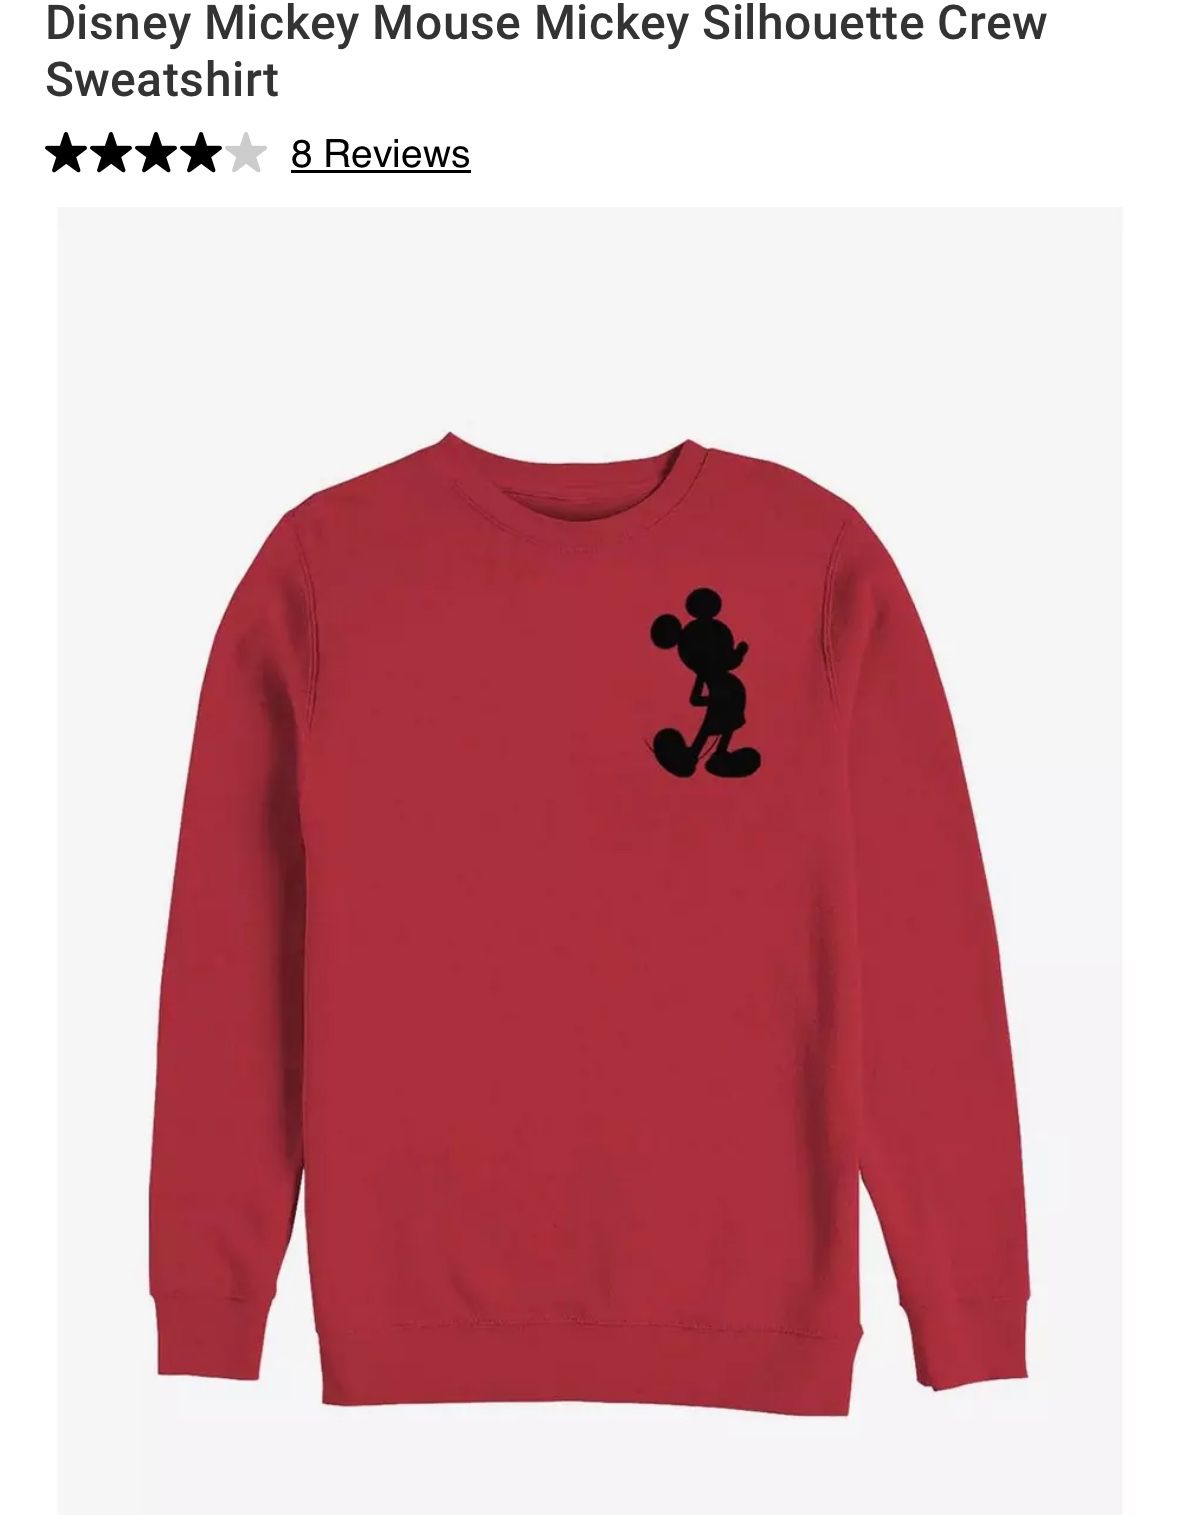 Mickey Mouse sweatshirt in Men size “S/M”